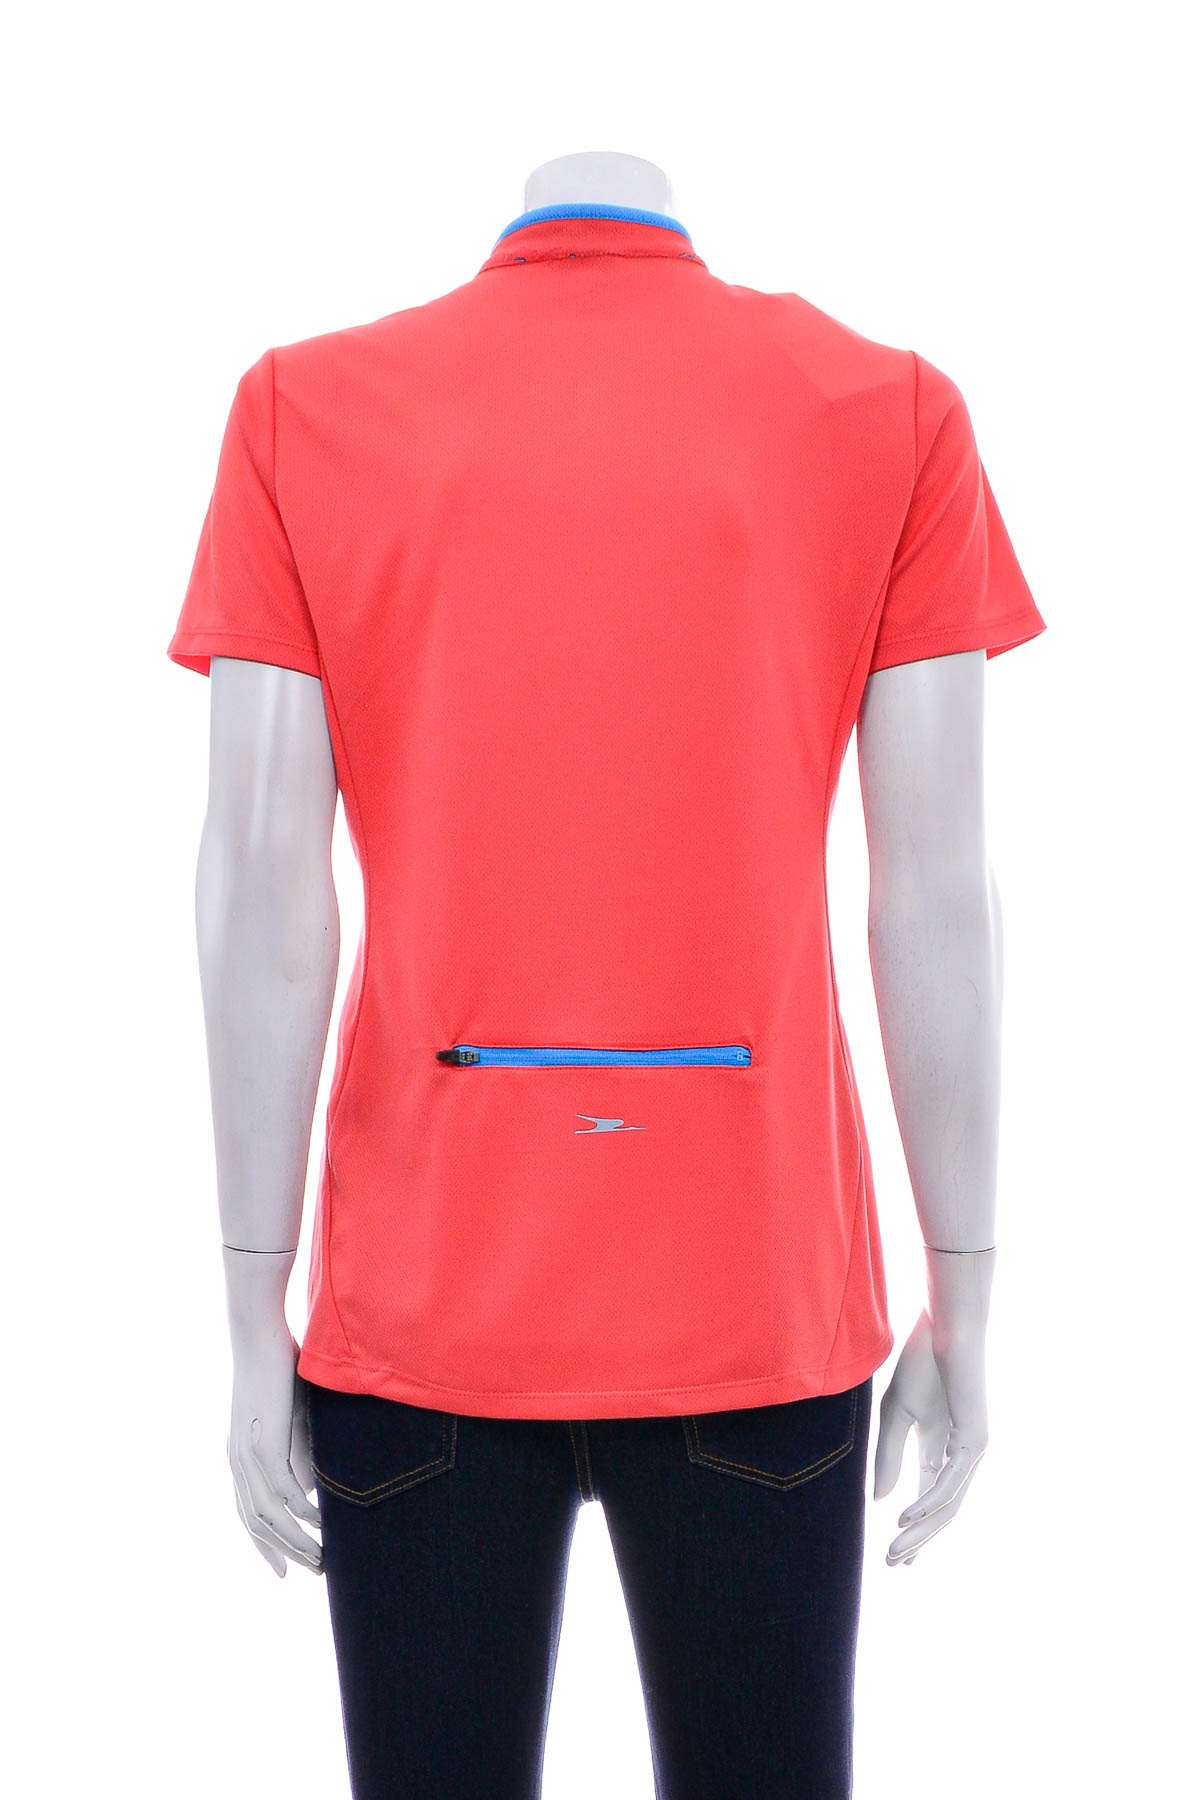 Women's t-shirt for cycling - Crane - 1